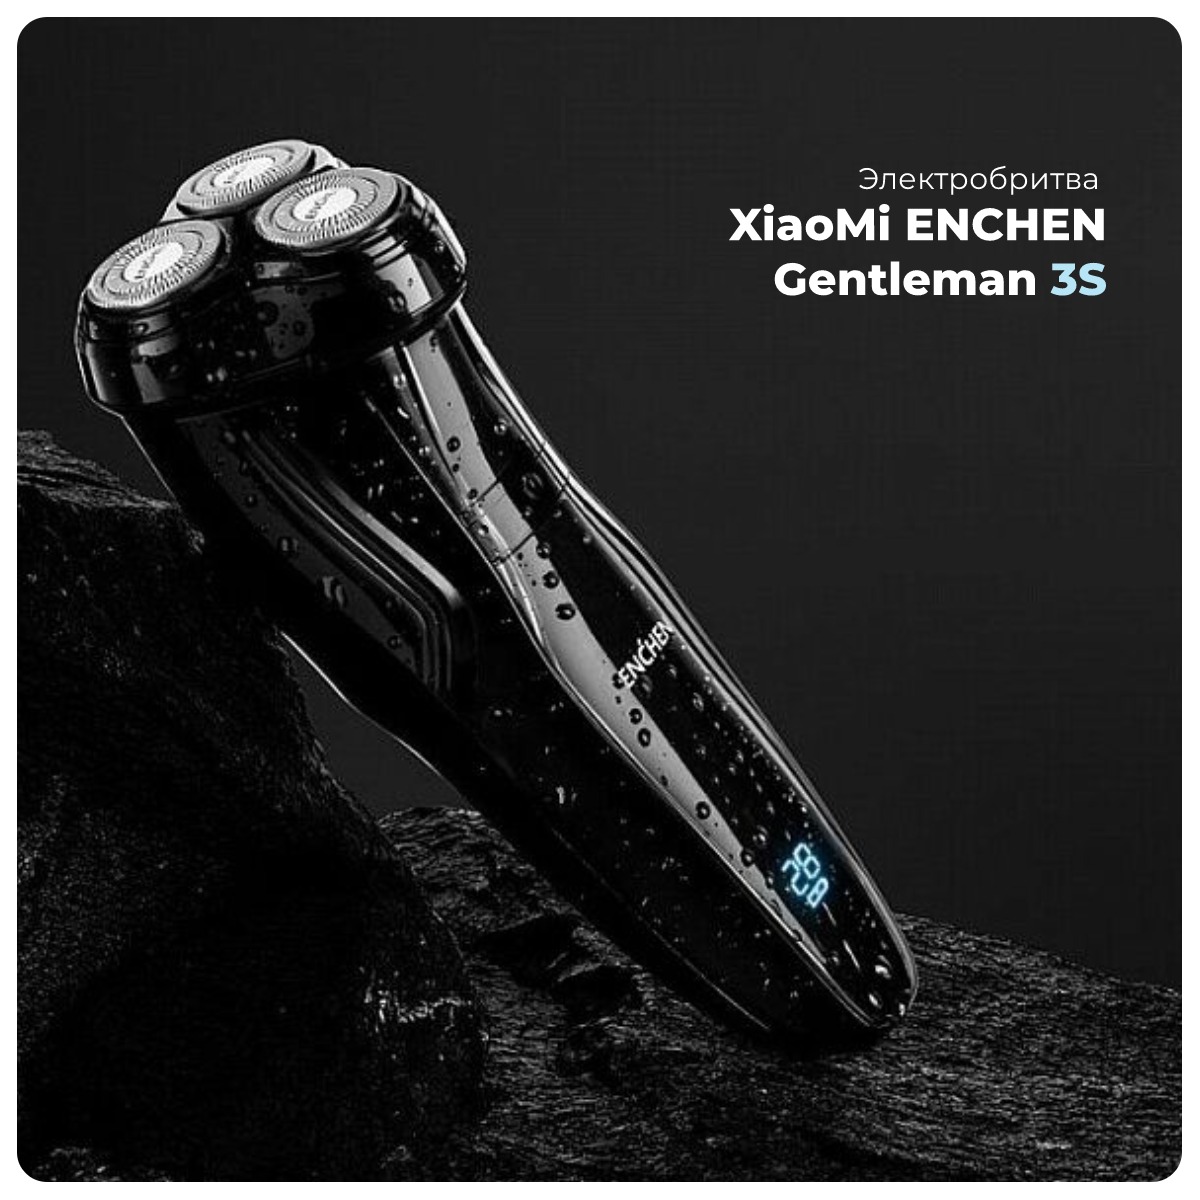 XiaoMi-ENCHEN-Gentleman-3S-01